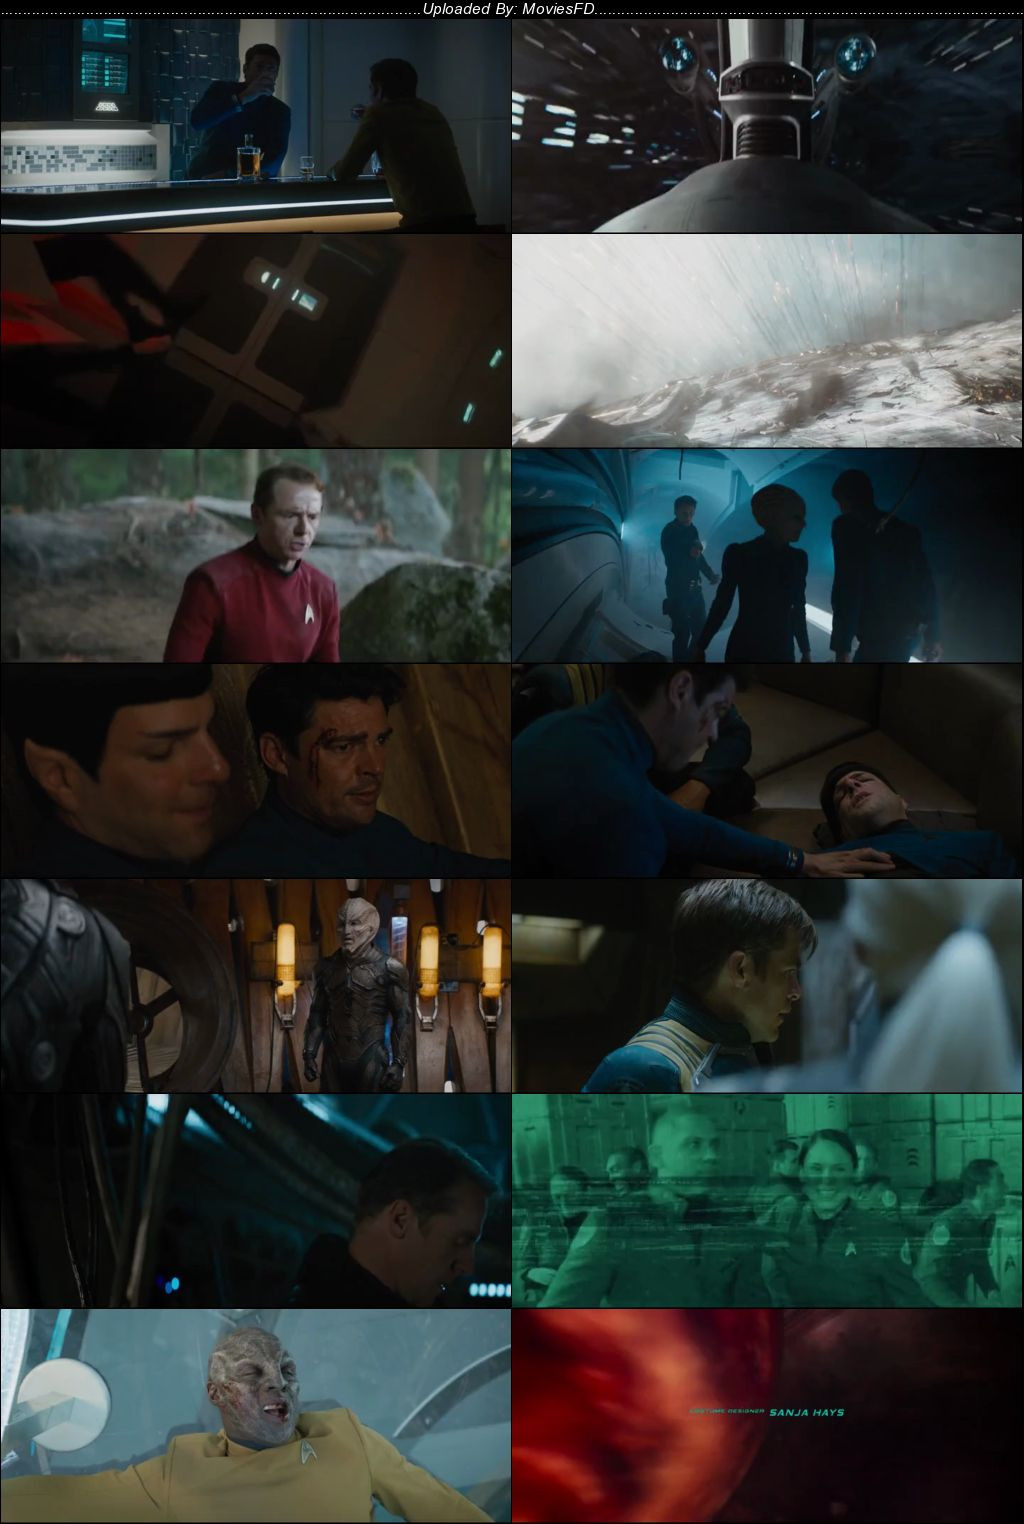 Download Star Trek Beyond (2016) BluRay [Hindi + English] ESub 480p 720p